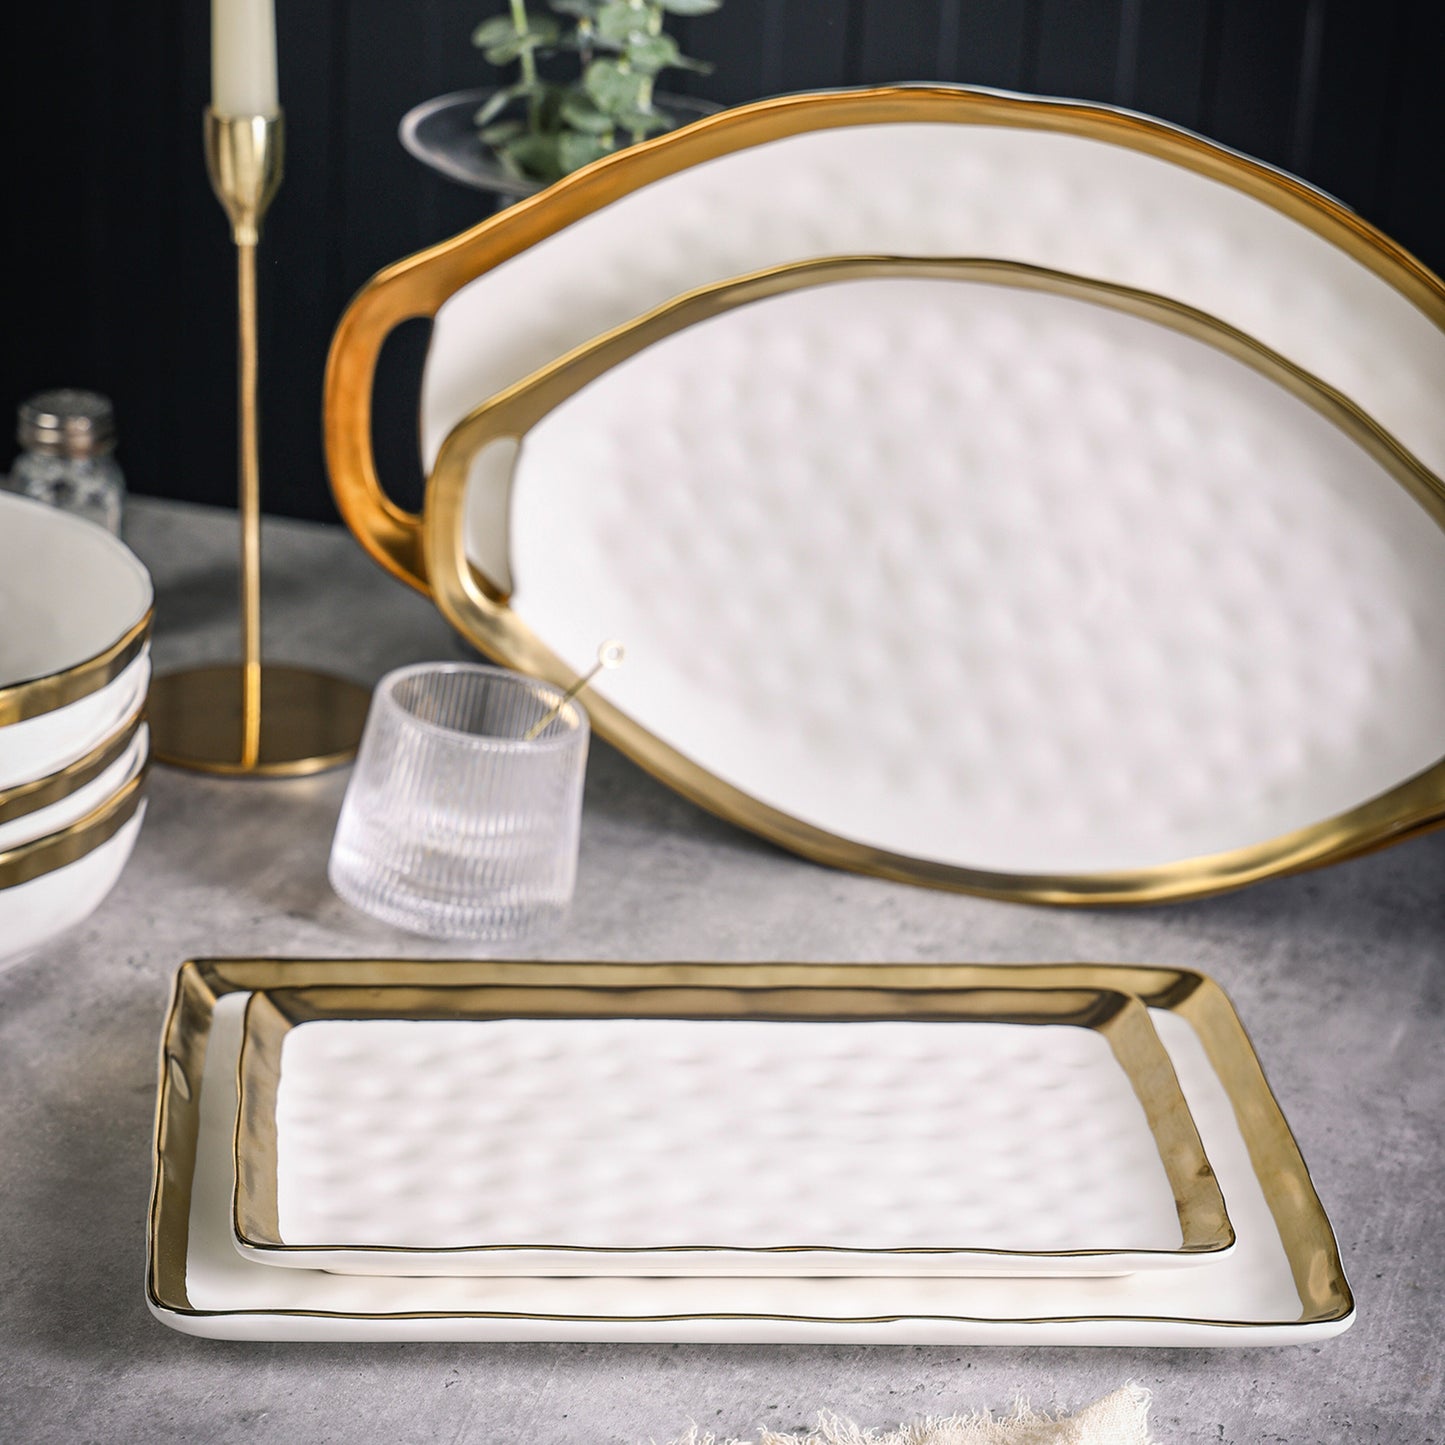 Florian Porcelain Service Plate Set - White